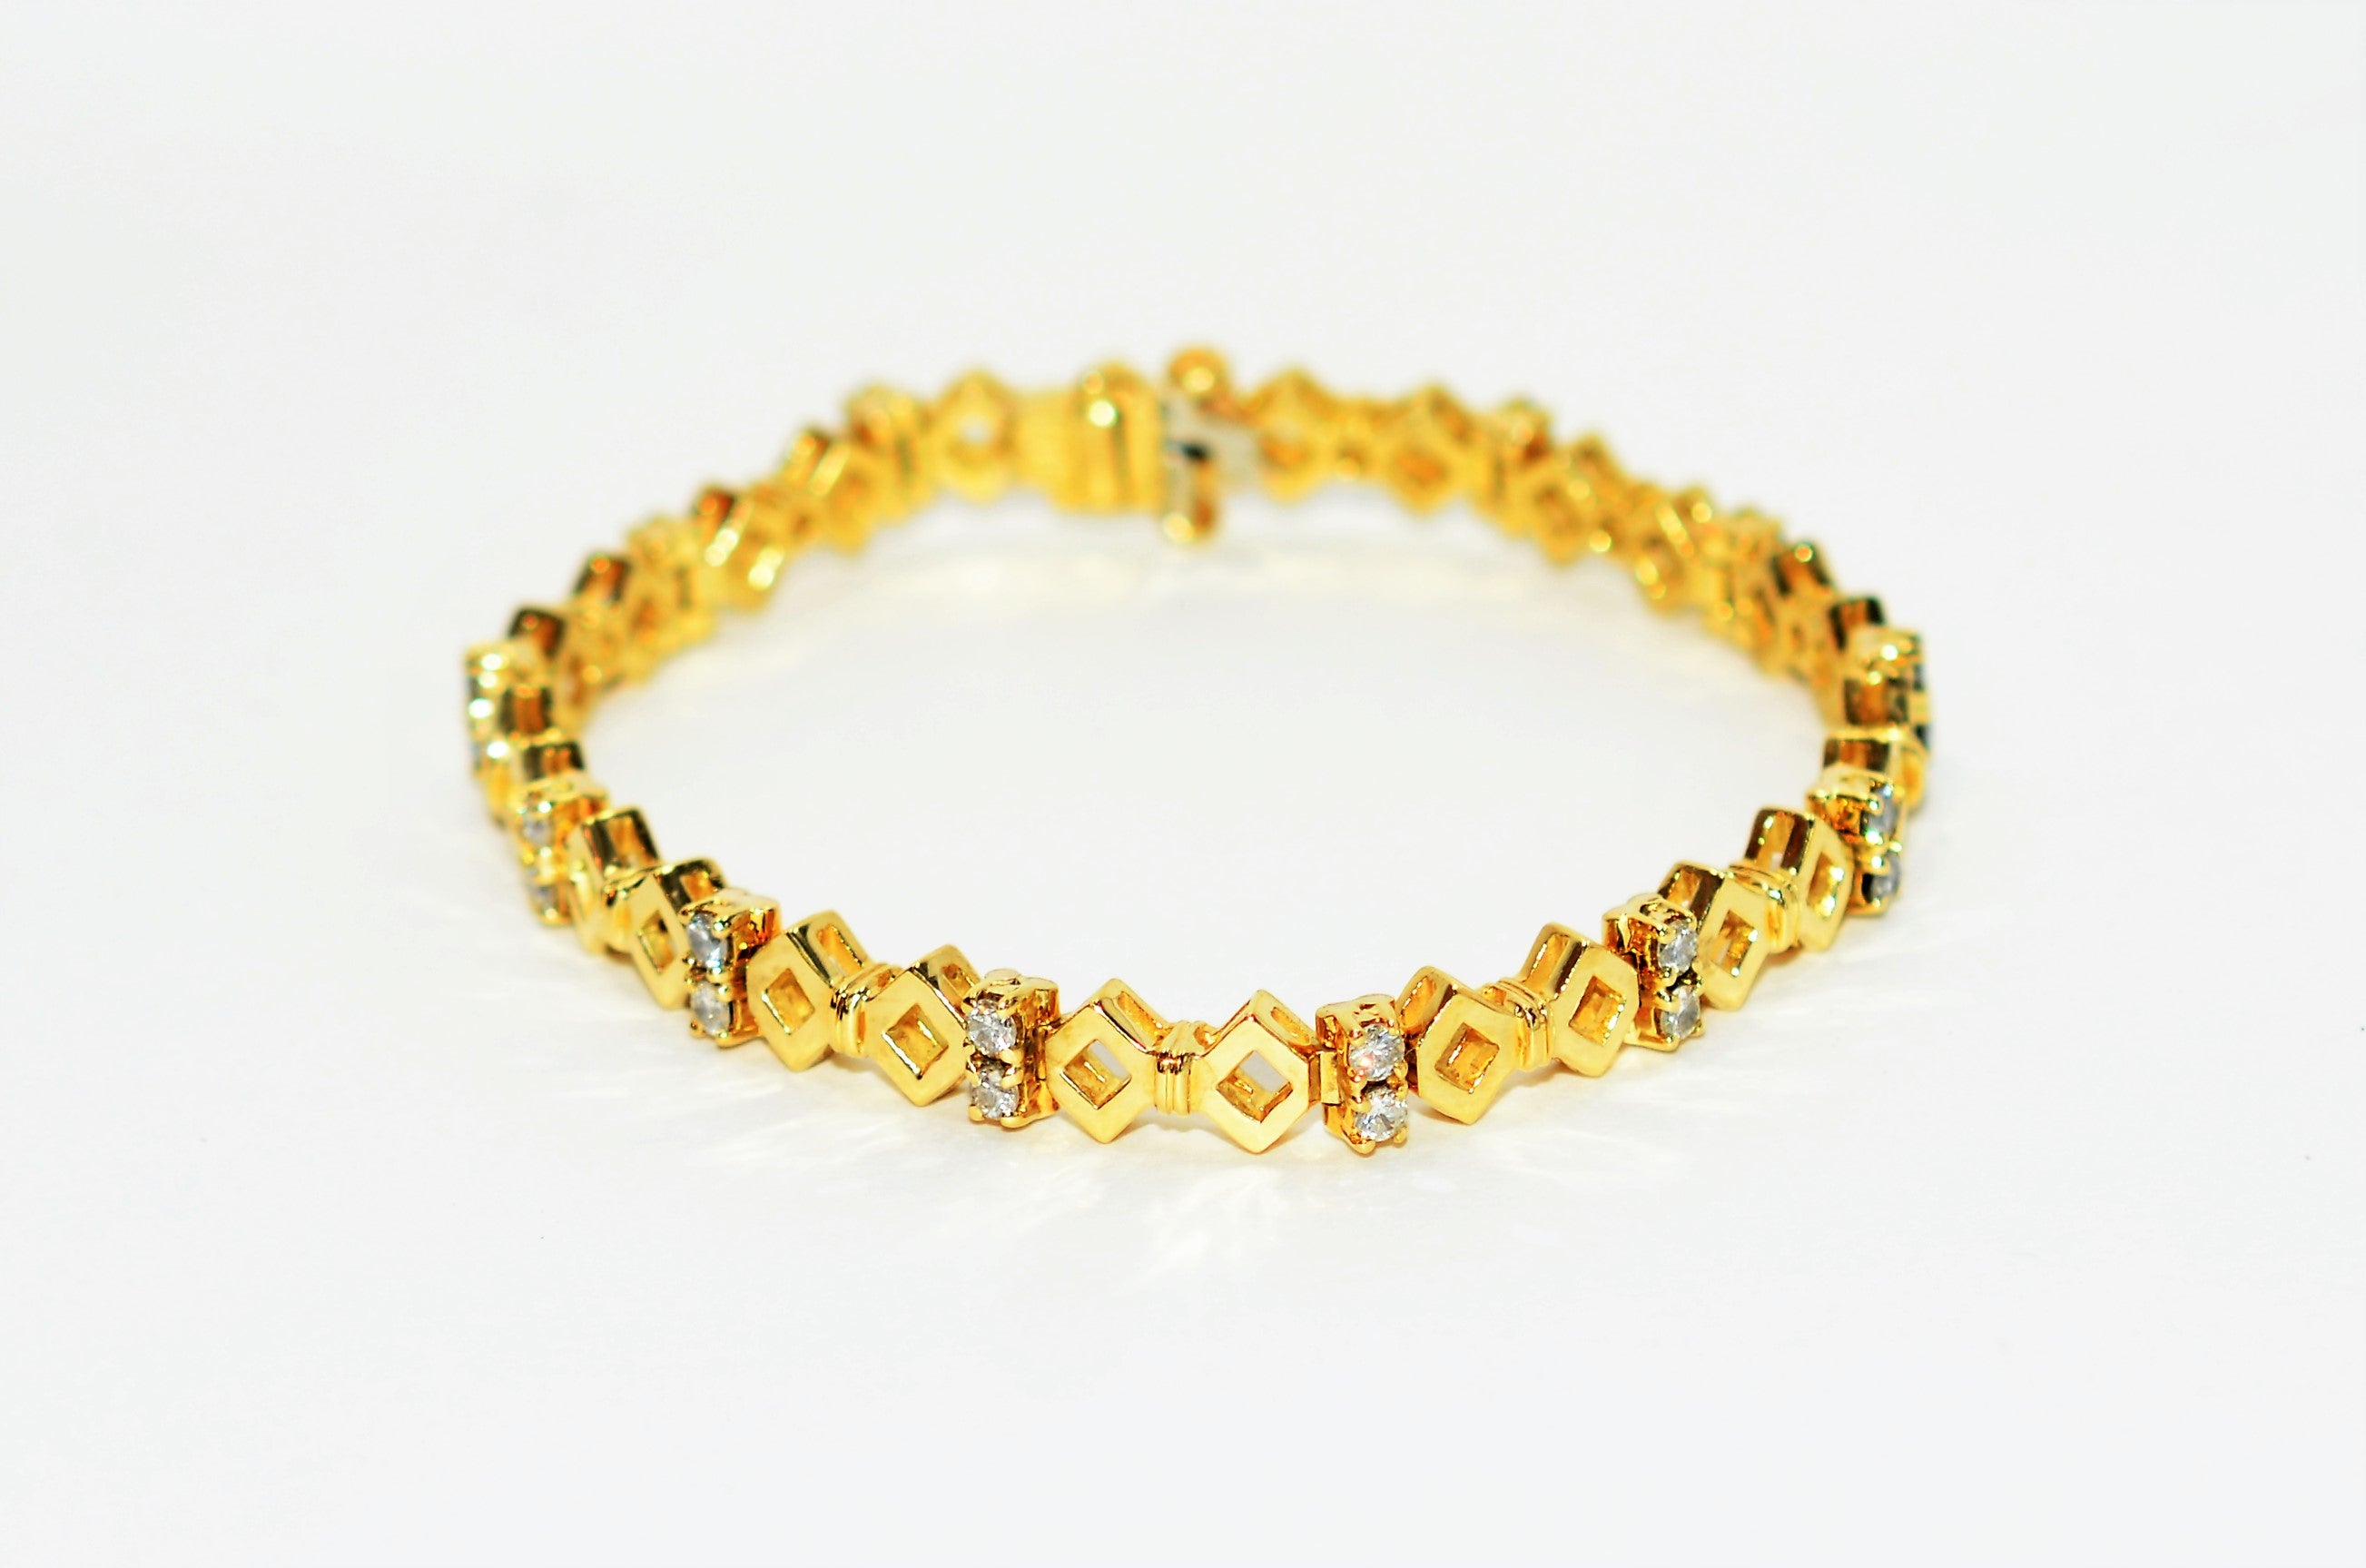 Natural Diamond Bracelet 18K Solid Gold  1.56tcw Tennis Bracelet Estate Bracelet Vintage Bracelet Bridal Wedding Jewelry Jewellery Statement